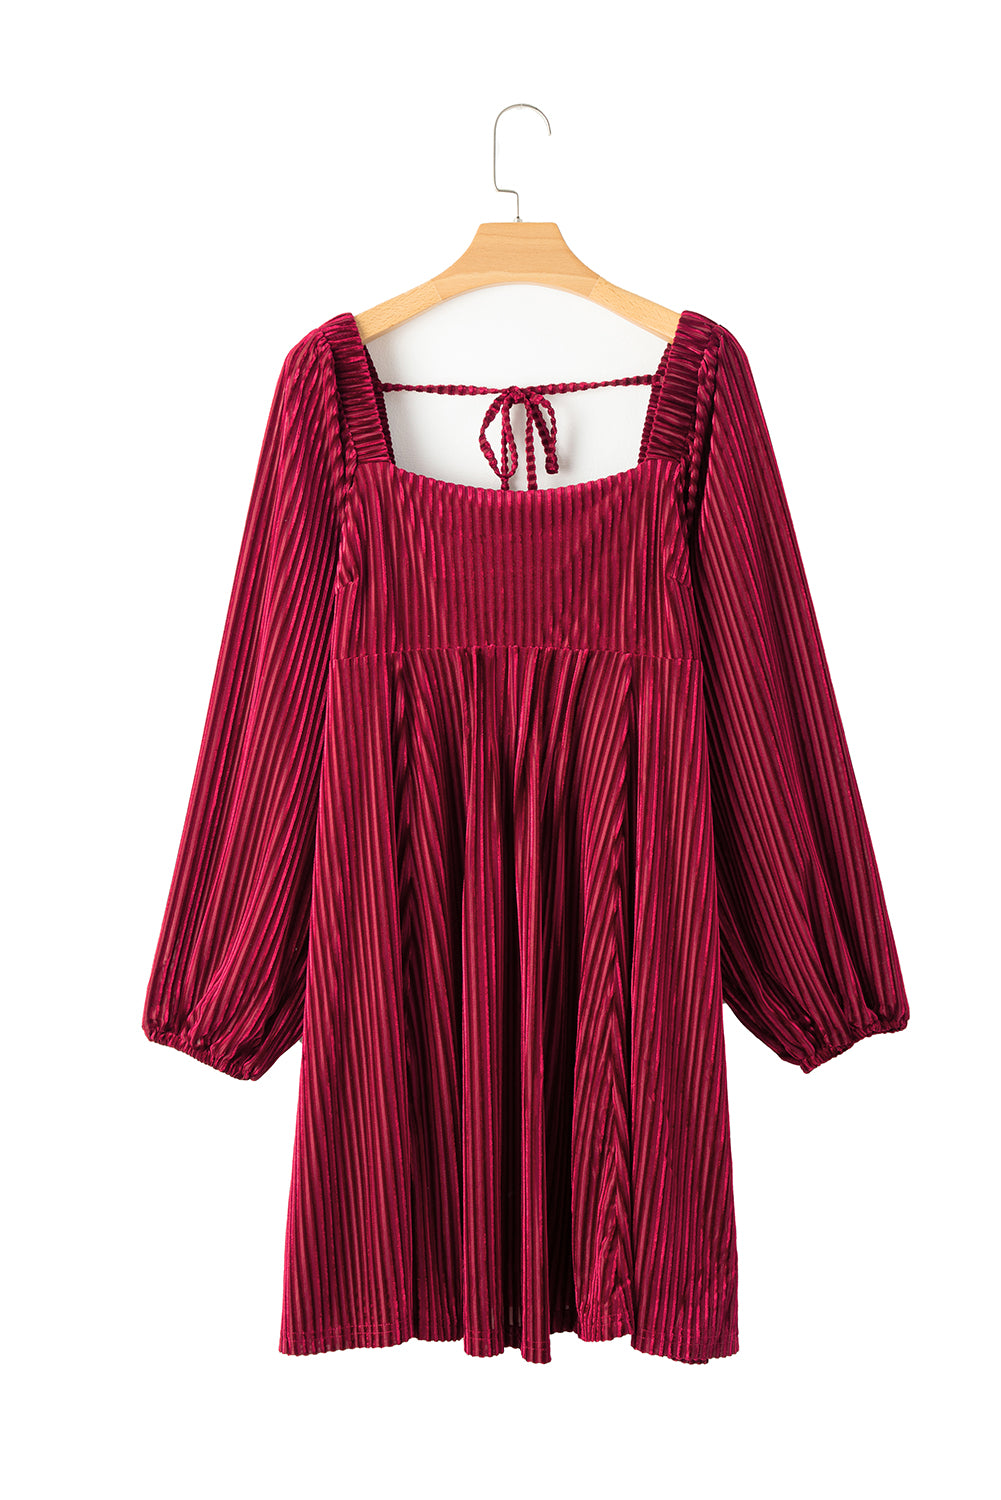 Rotes Babydoll-Kleid aus Samt mit eckigem Ausschnitt und Schnürung am Rücken